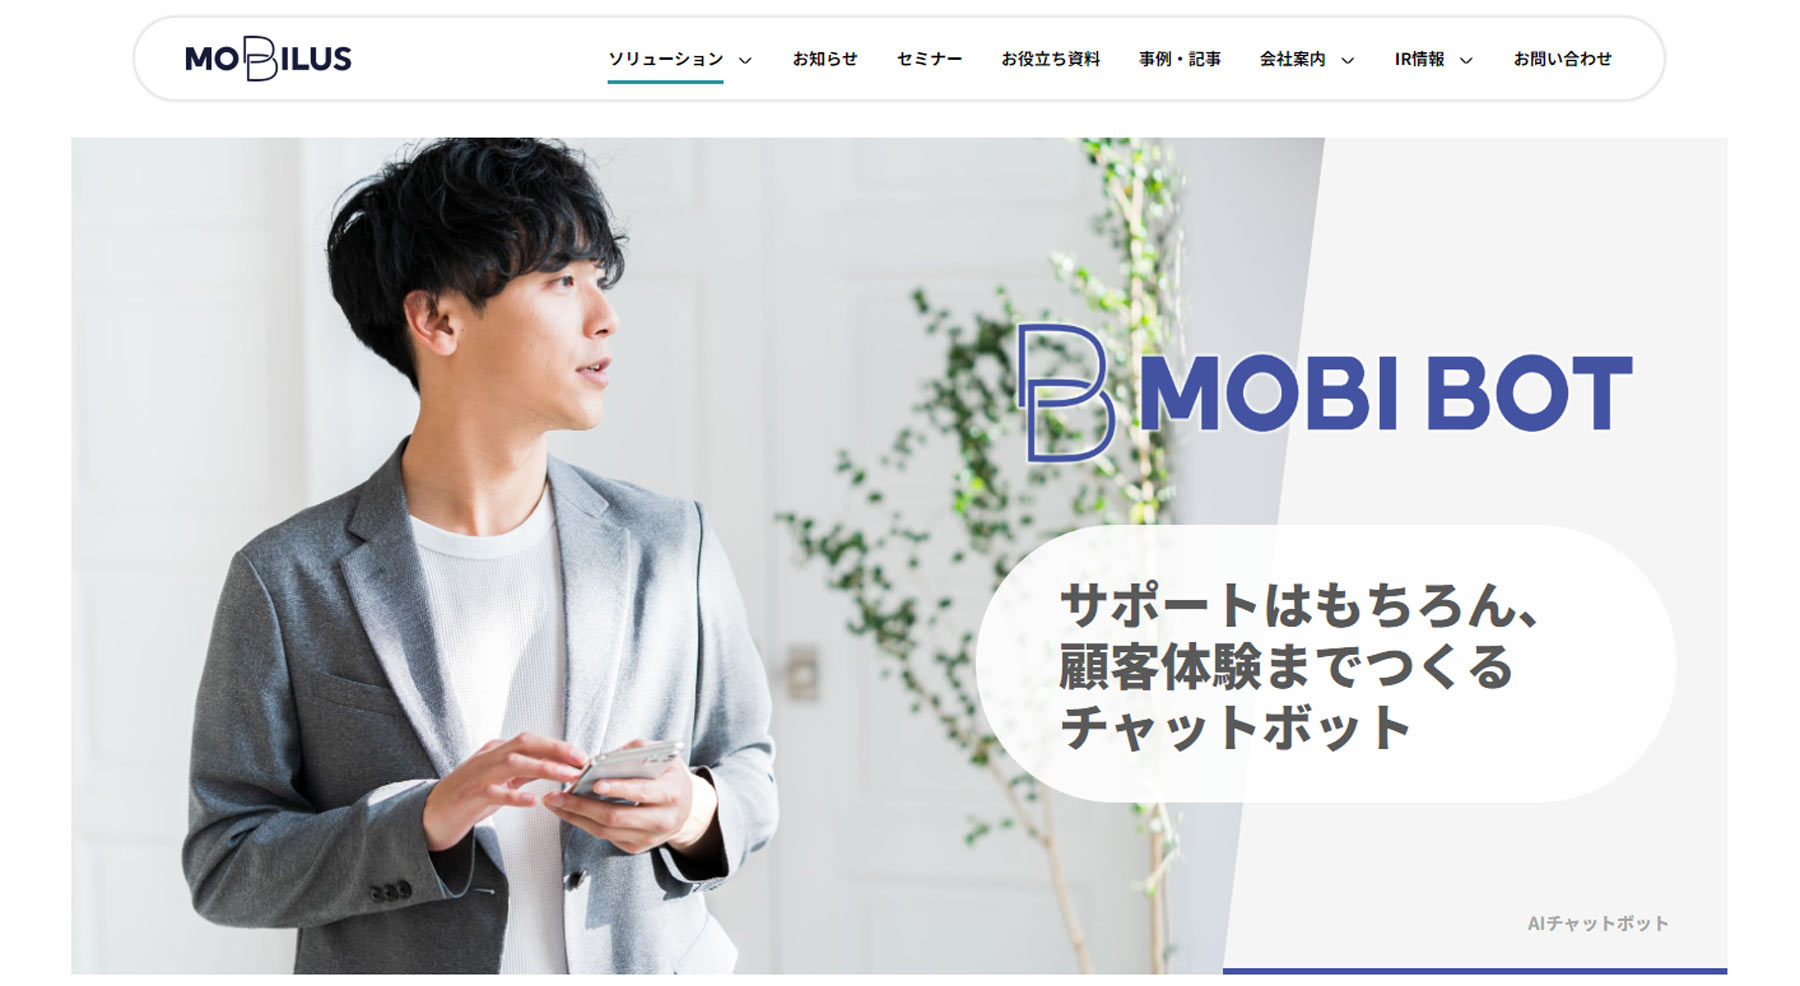 MOBI BOT公式Webサイト